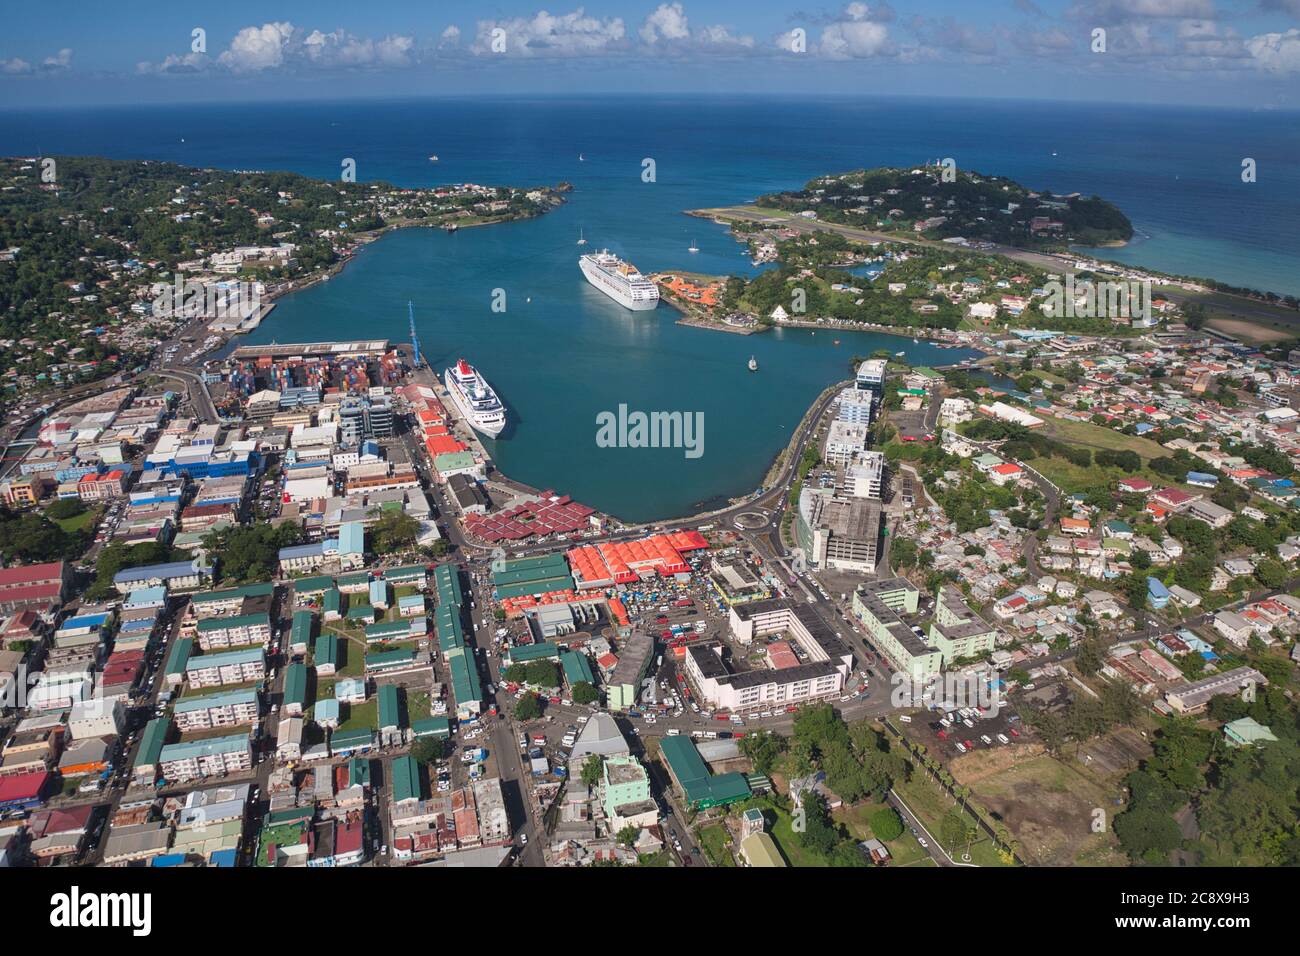 Castries, Hafen und Hauptstadt von St. Lucia in der Karibik, Westindien. Luftaufnahme von Straßen, Gebäuden und zwei Kreuzfahrtschiffen mit Flughafen oben rechts Stockfoto